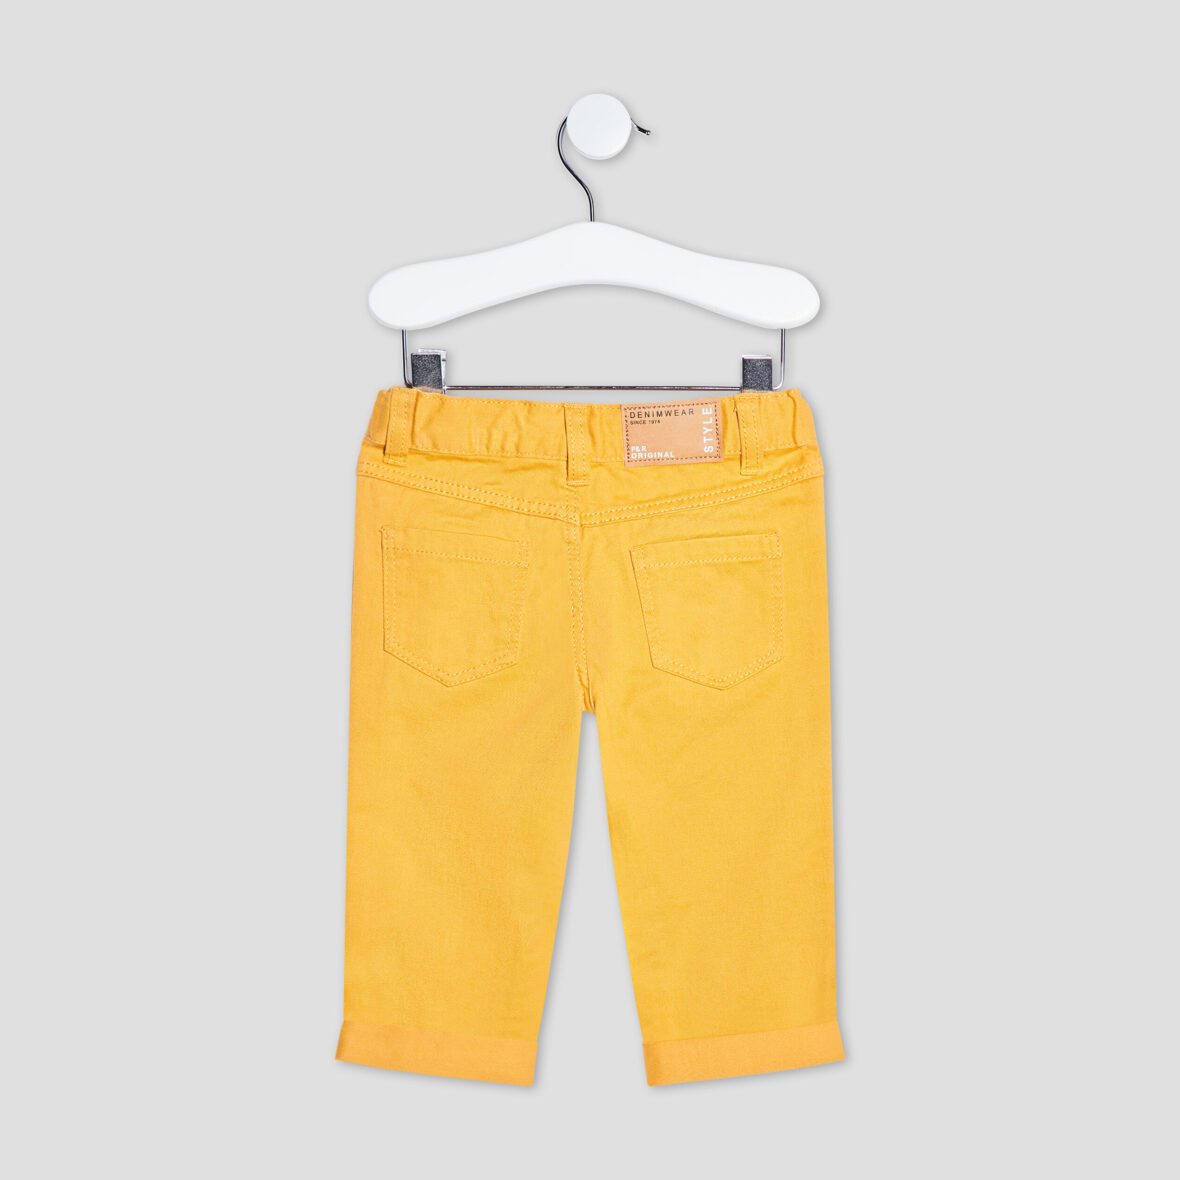 pantalon-droit-taille-ajustable-jaune-moutarde-bebeg-a-36165600619010025